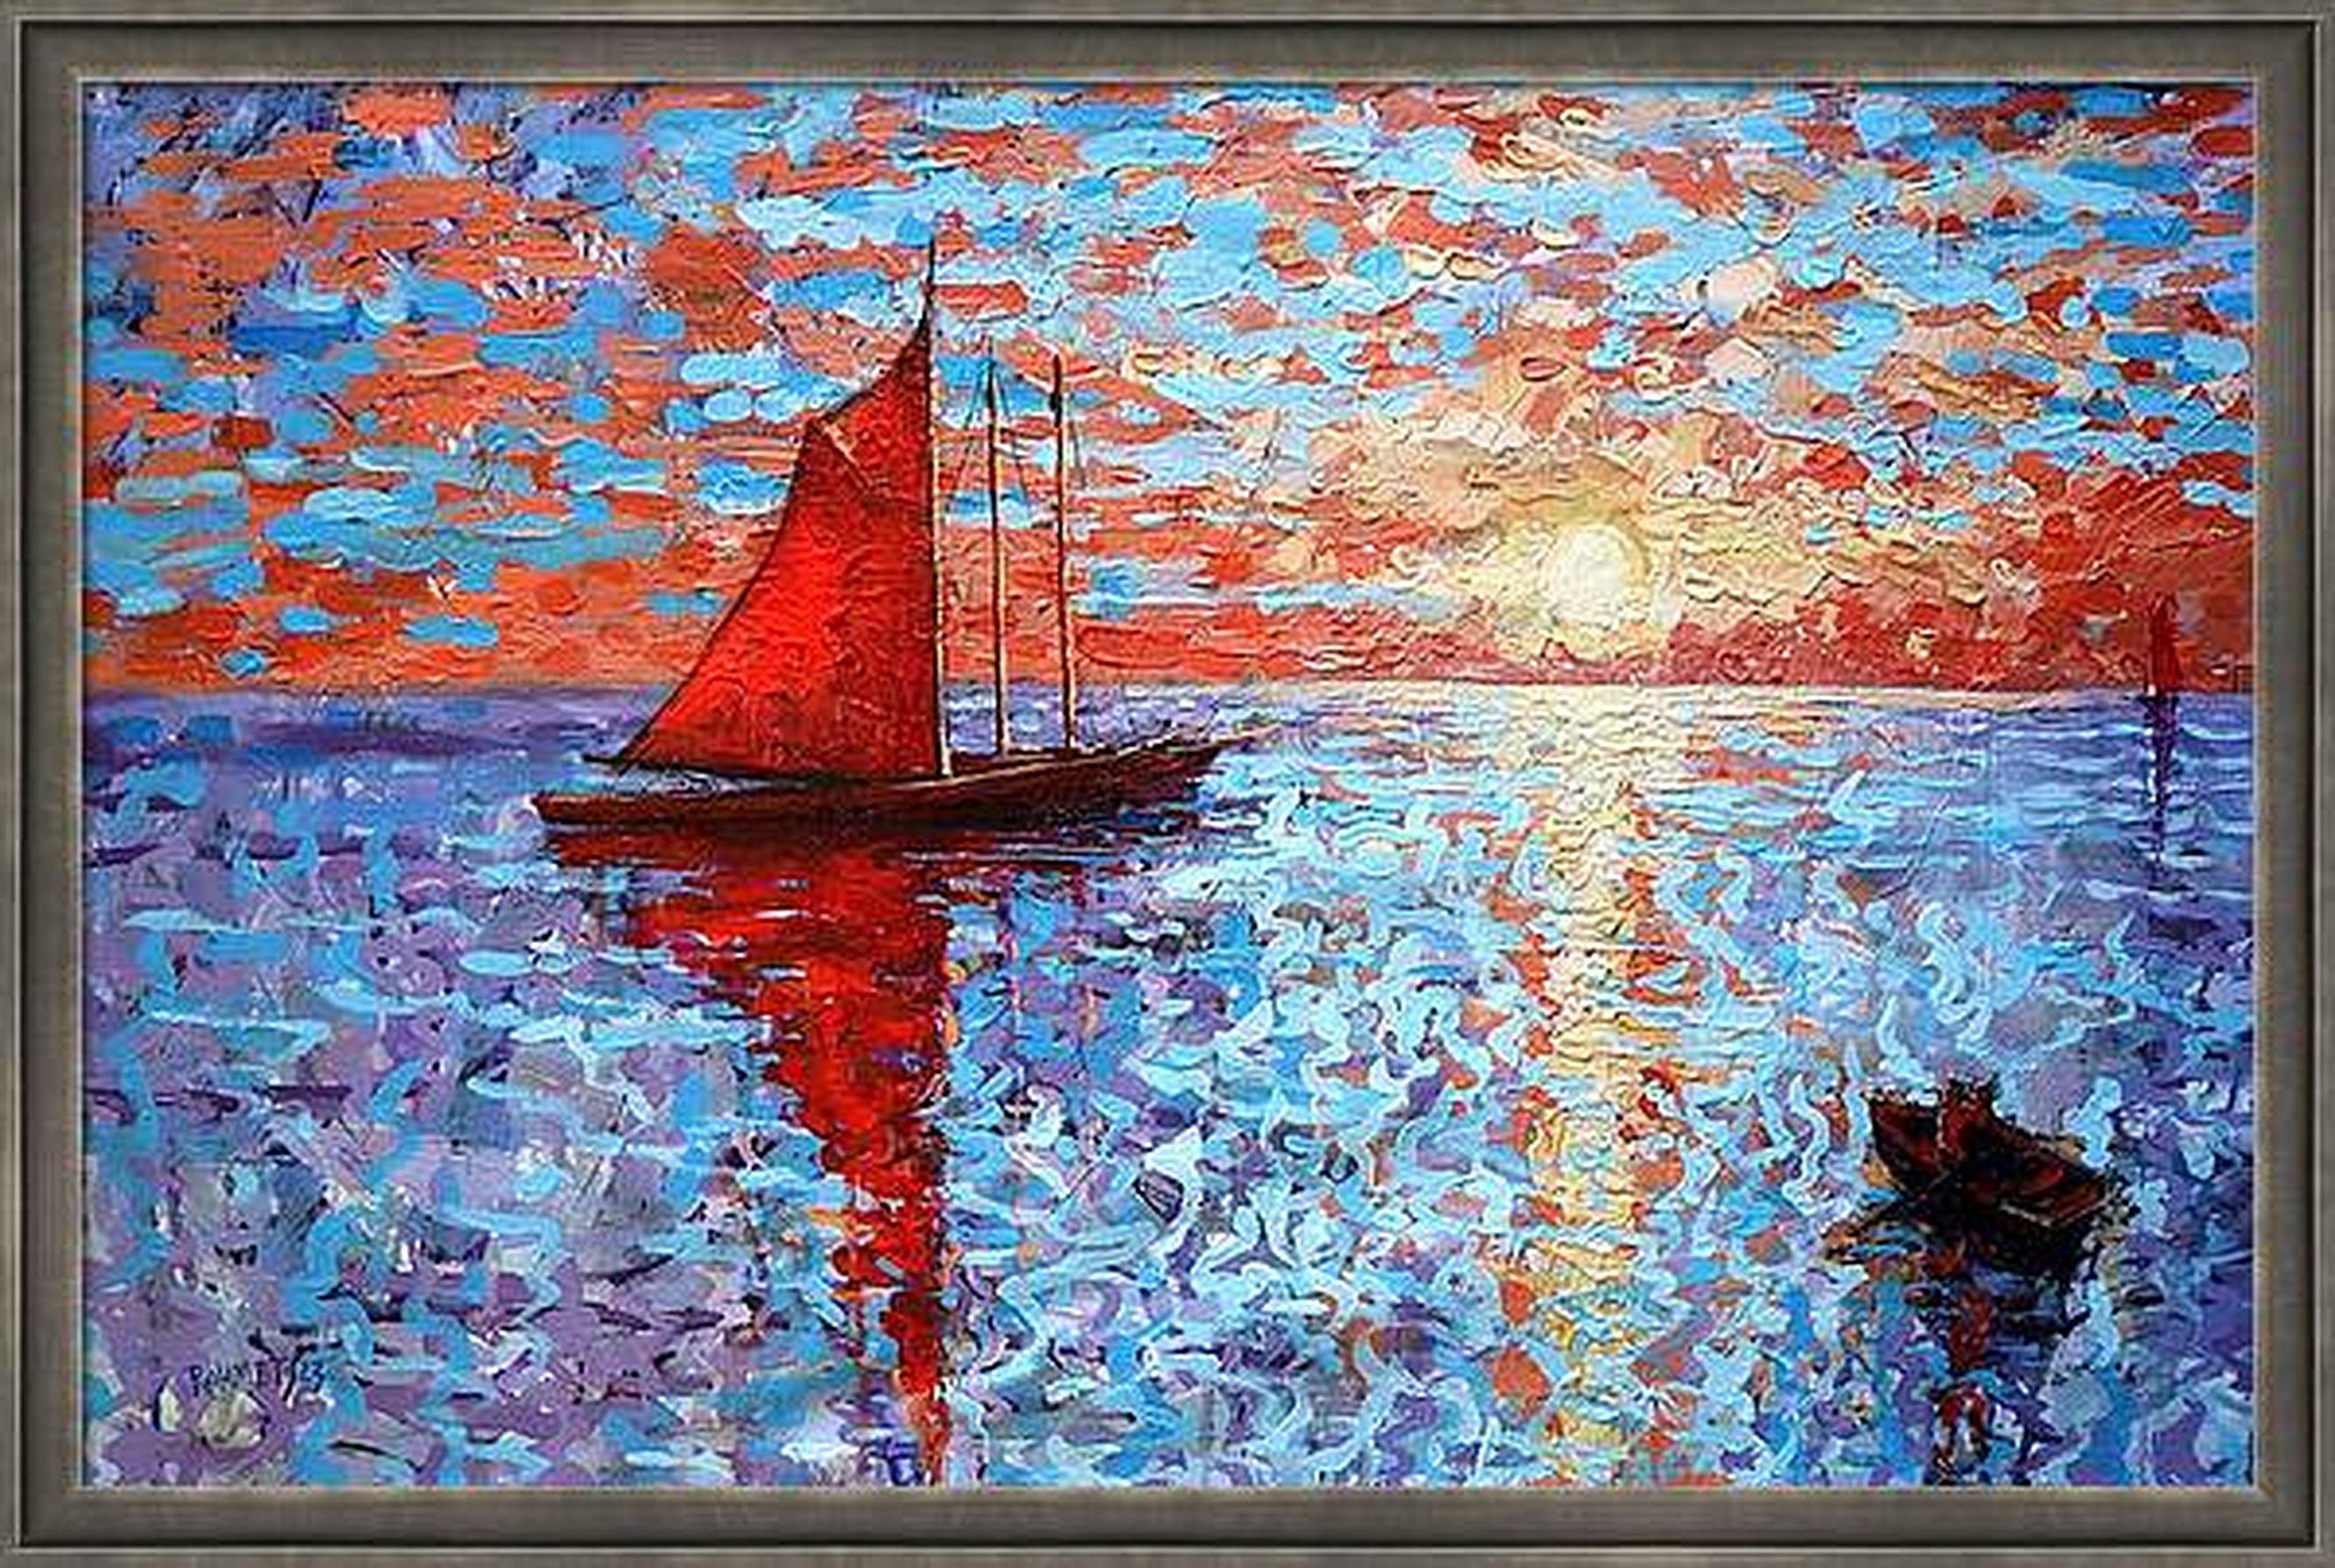 Scarlet Sail - Impressionist Painting by RAKHMET REDZHEPOV (RAMZI)